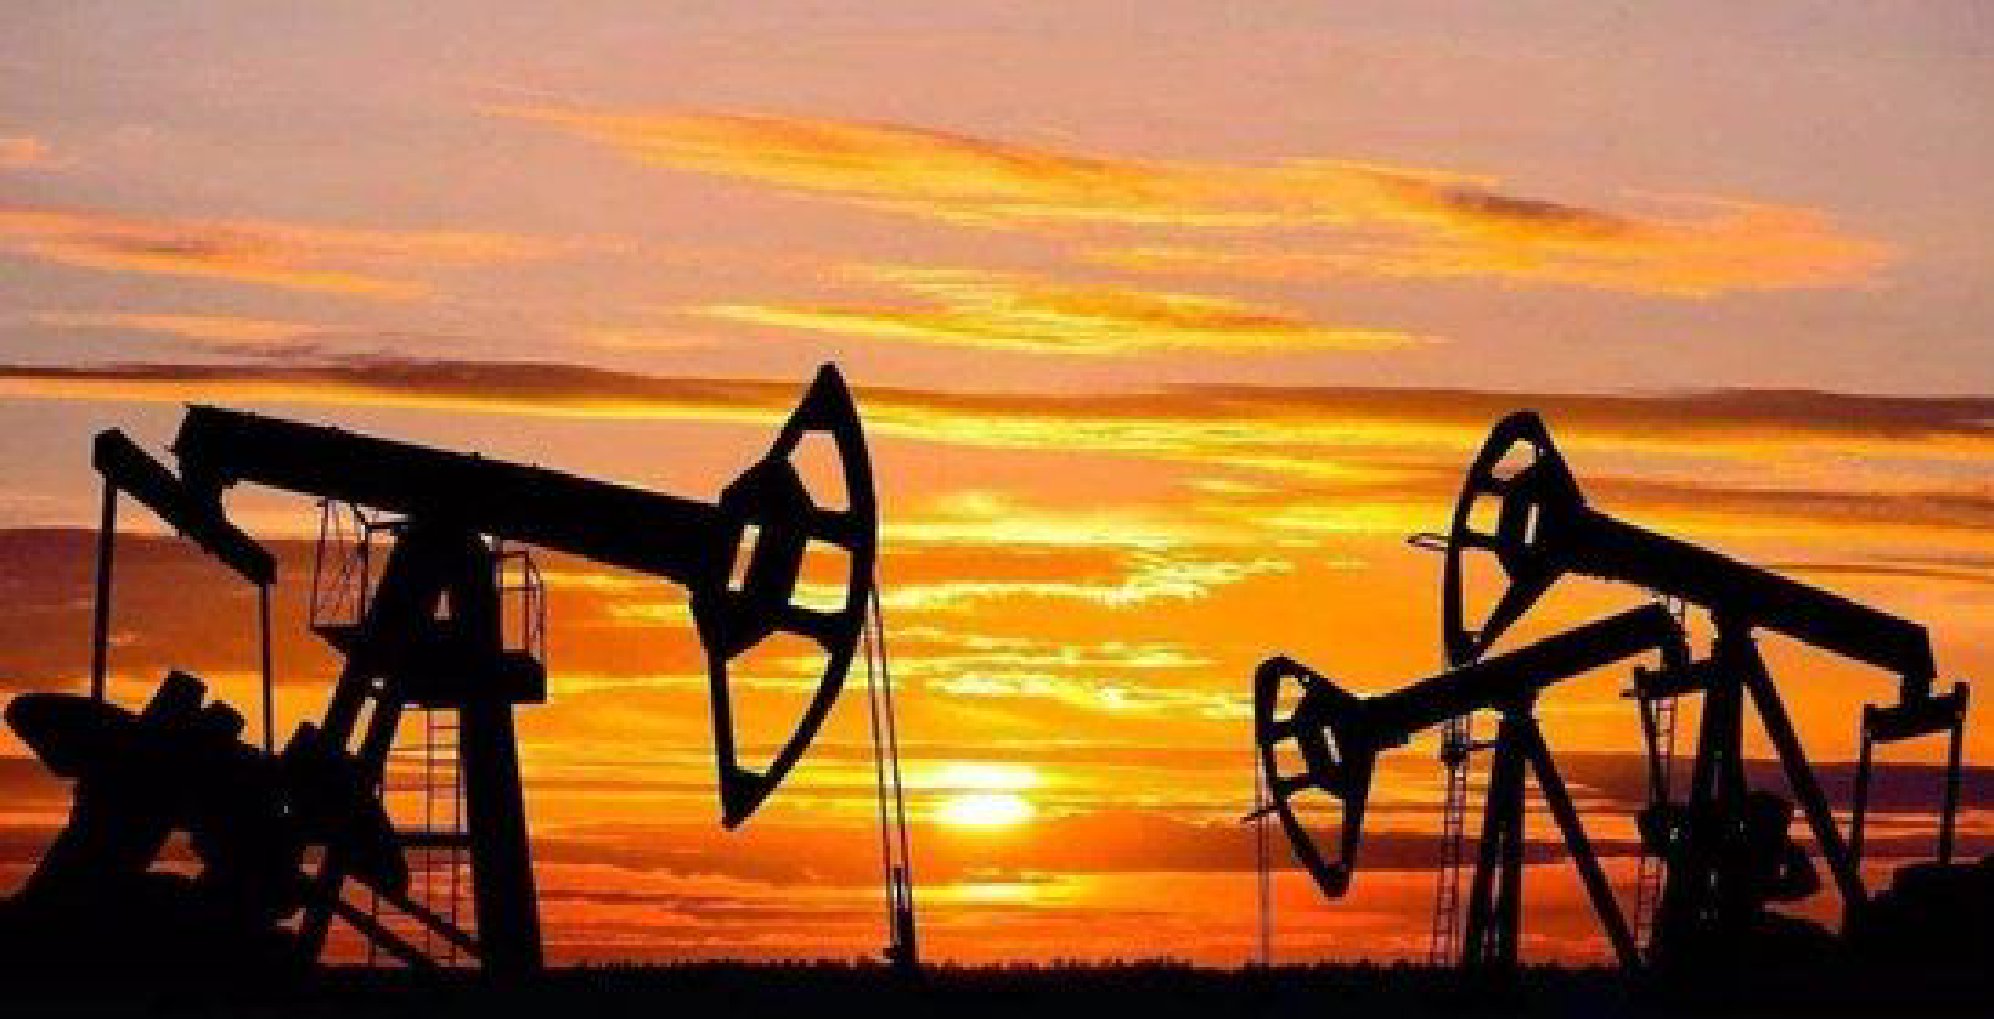 俄罗斯10月石油出口价格几乎全部高于七国集团设定的价格上限